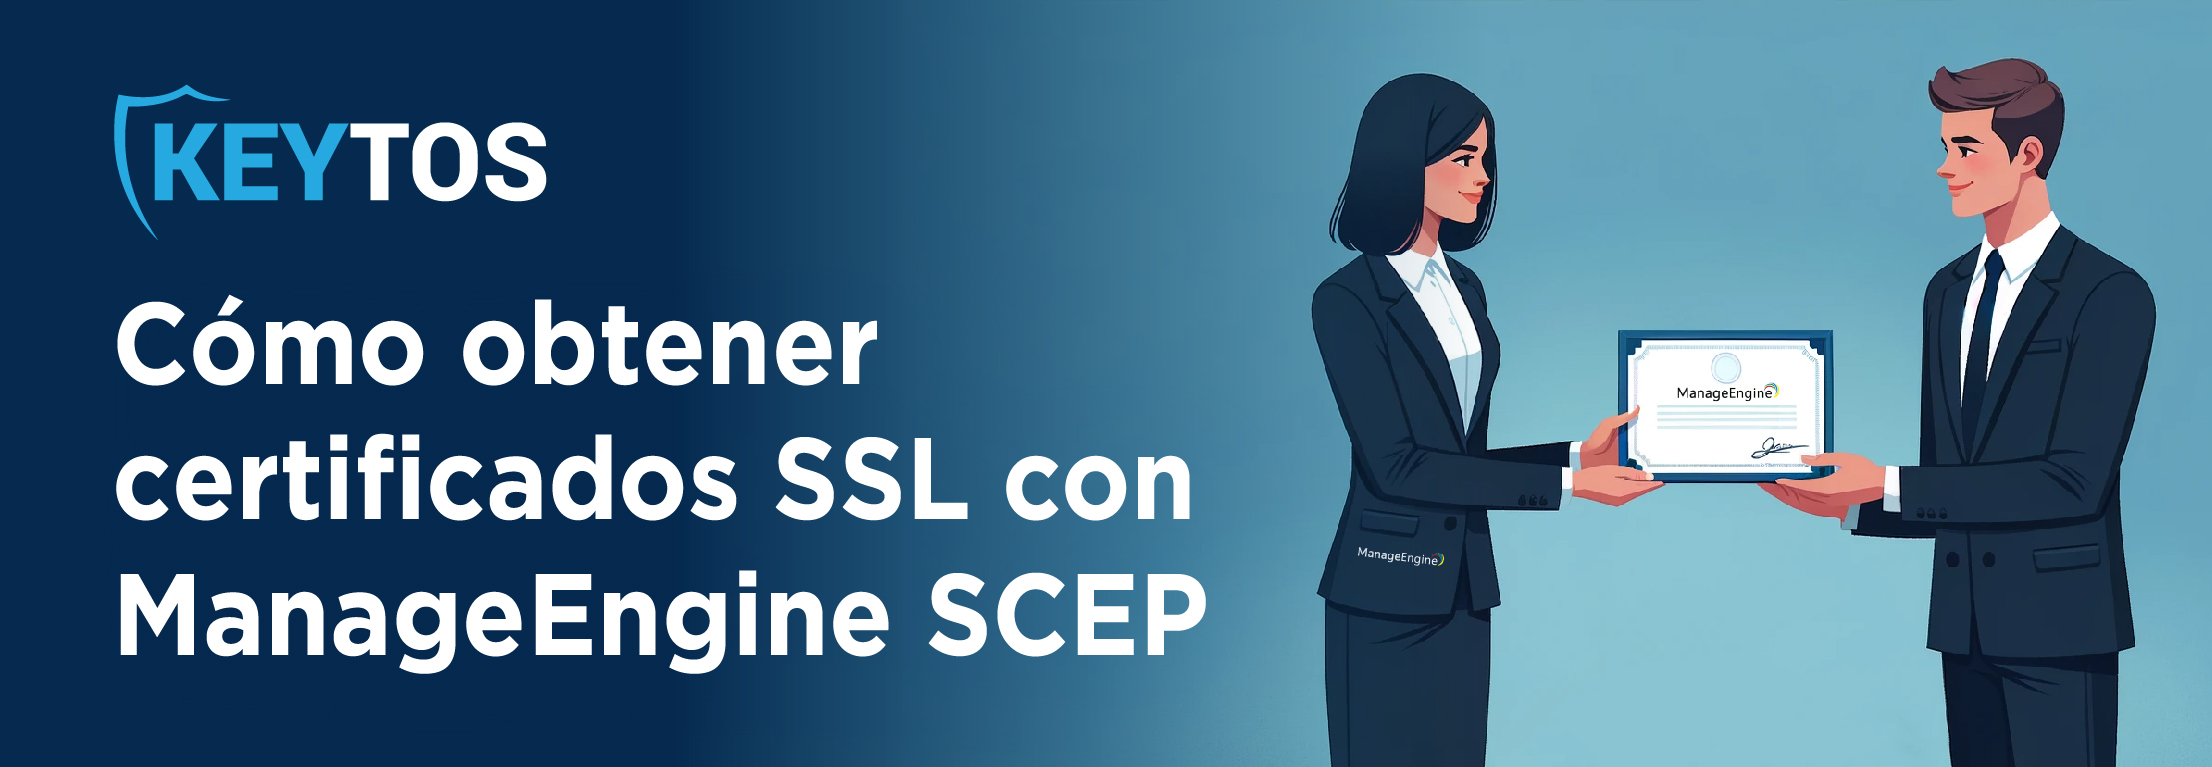 ¿Cómo se pueden obtener certificados SSL/TLS con ManageEngine SCEP?